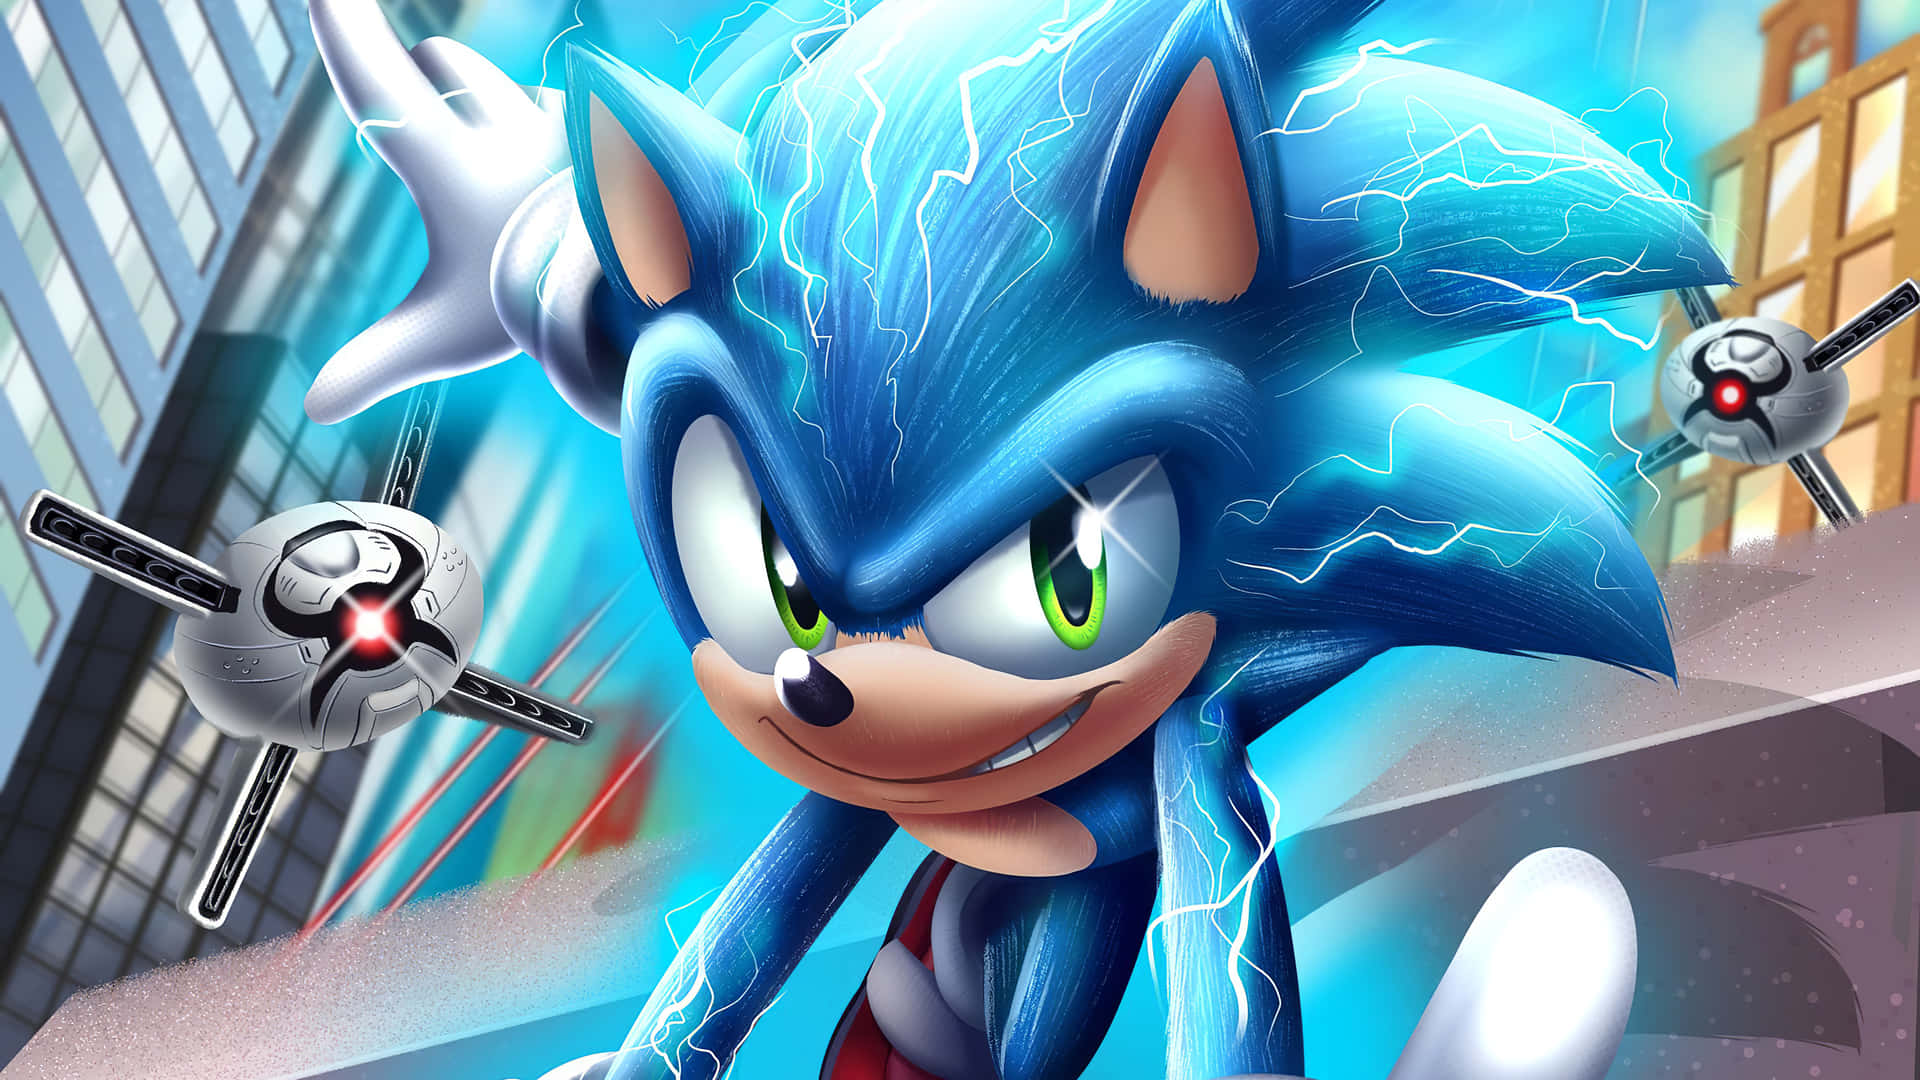 Sonicthe Hedgehog, Velocista E Defensor Do Mundo.